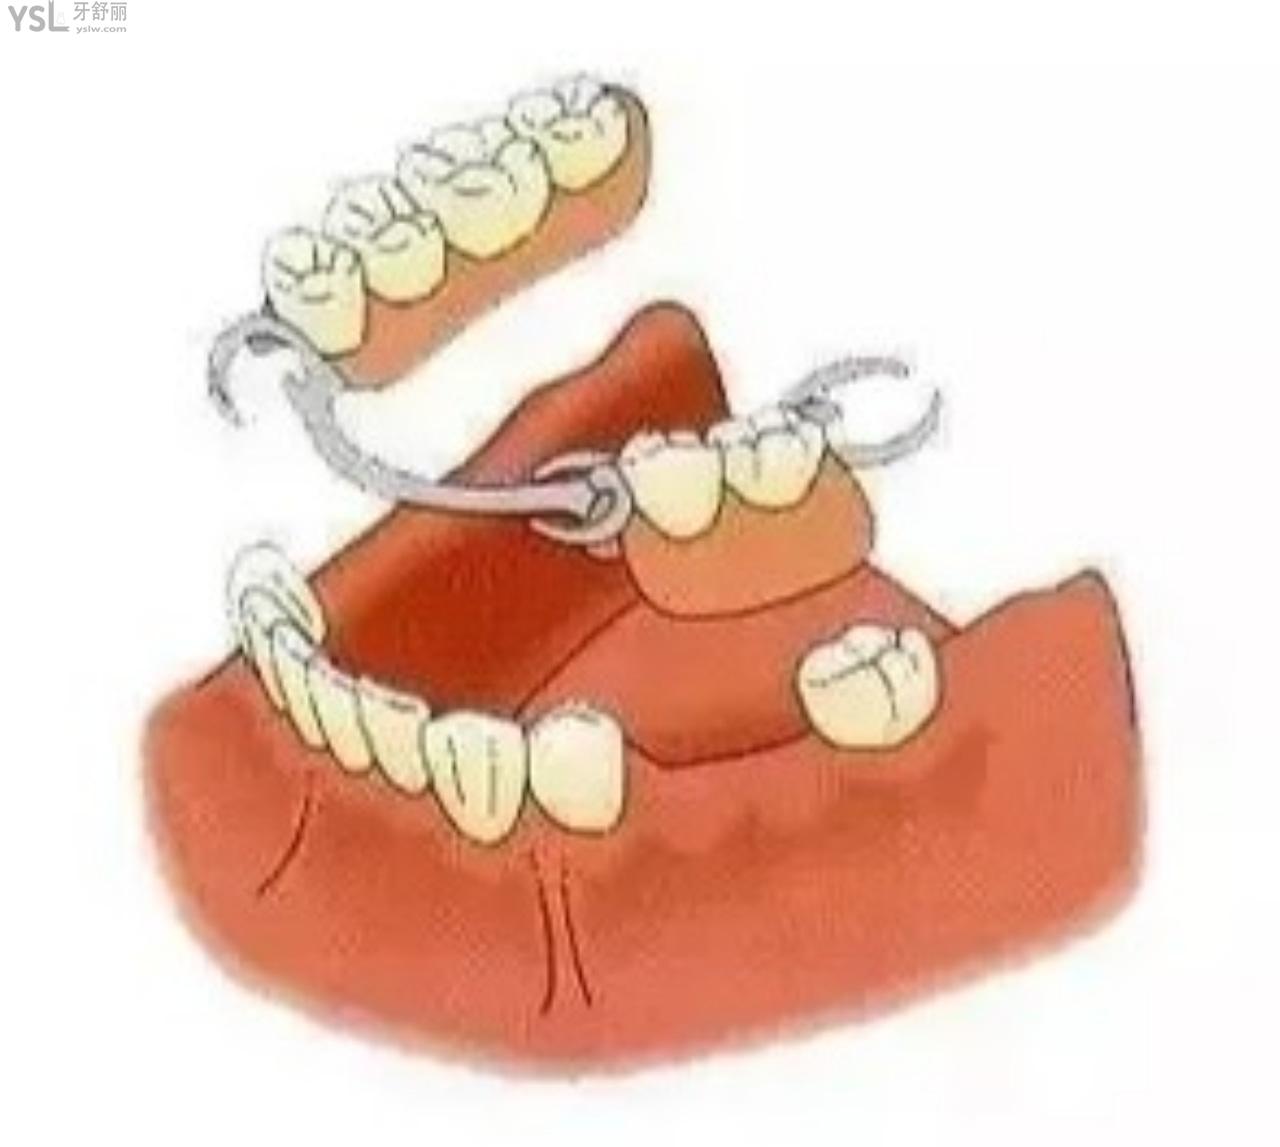 固定假牙换成没有挂钩的活动假牙好吗